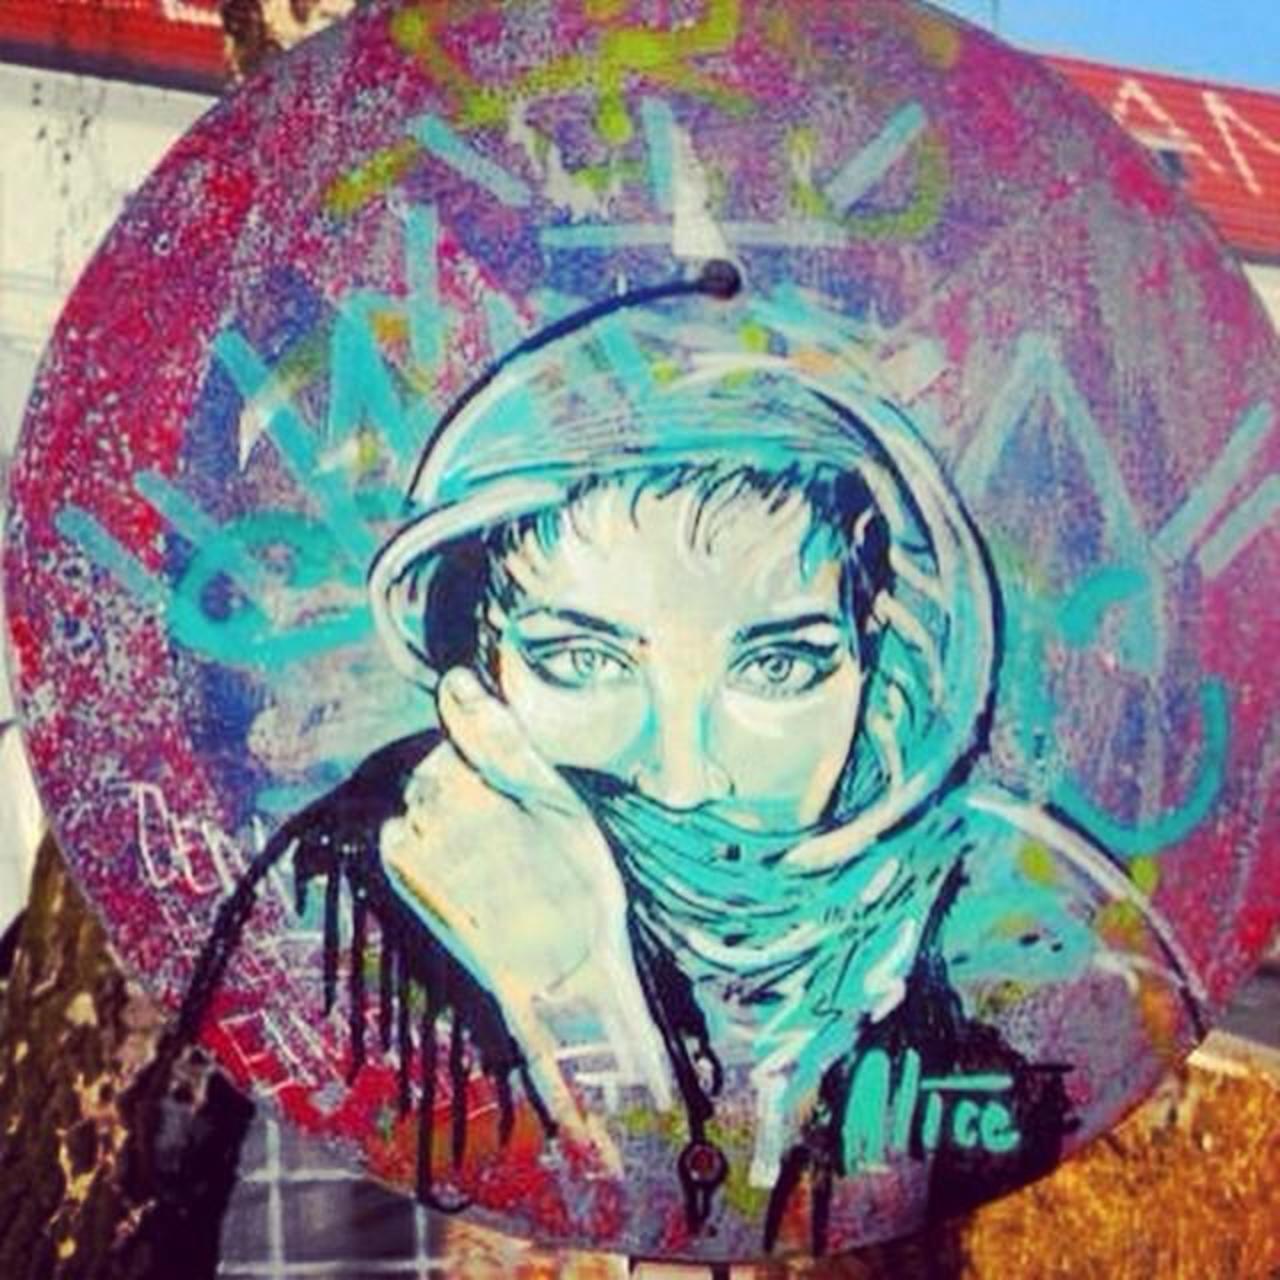 Alice Pasquini #stencil #sprayart #stencilart #StreetArt #graffiti #urbanart #mural #murales http://t.co/iCU8rWiqNU